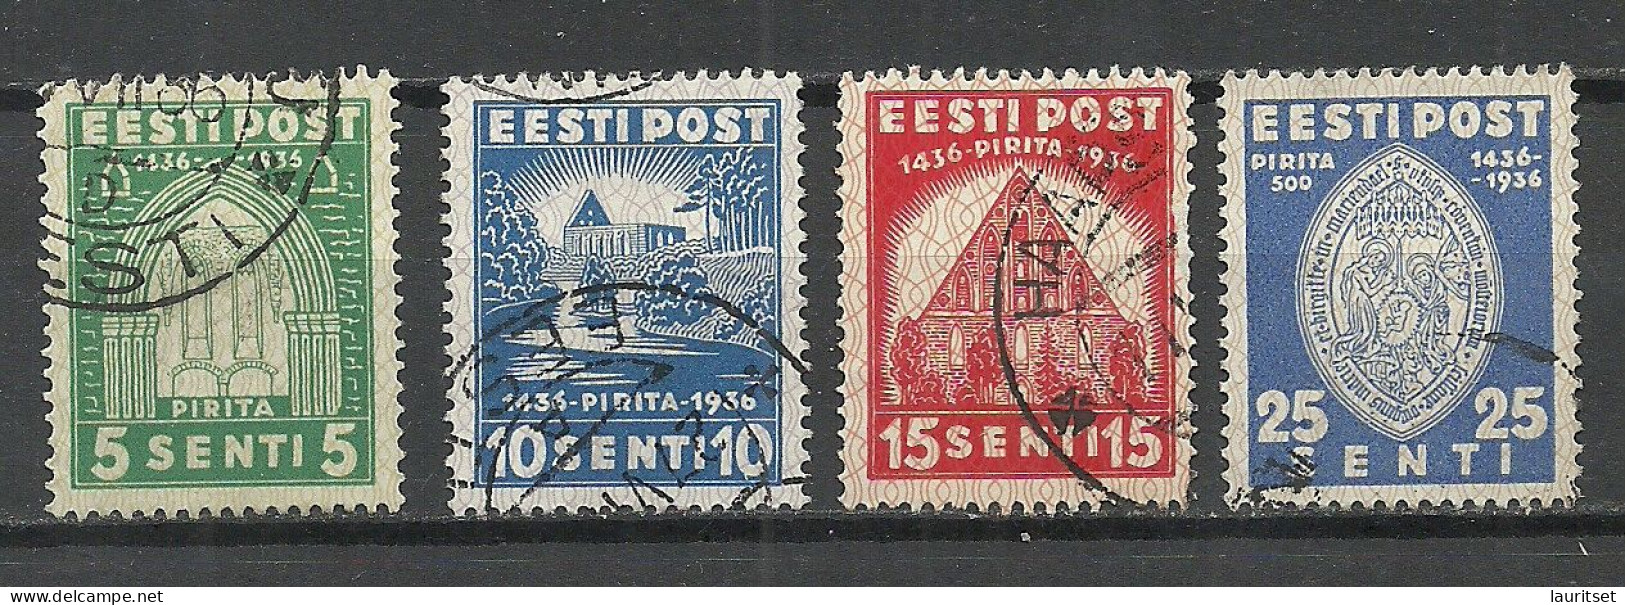 Estonia Estland 1936 Nonnery Pirita Michel 120 - 123 O - Abadías Y Monasterios